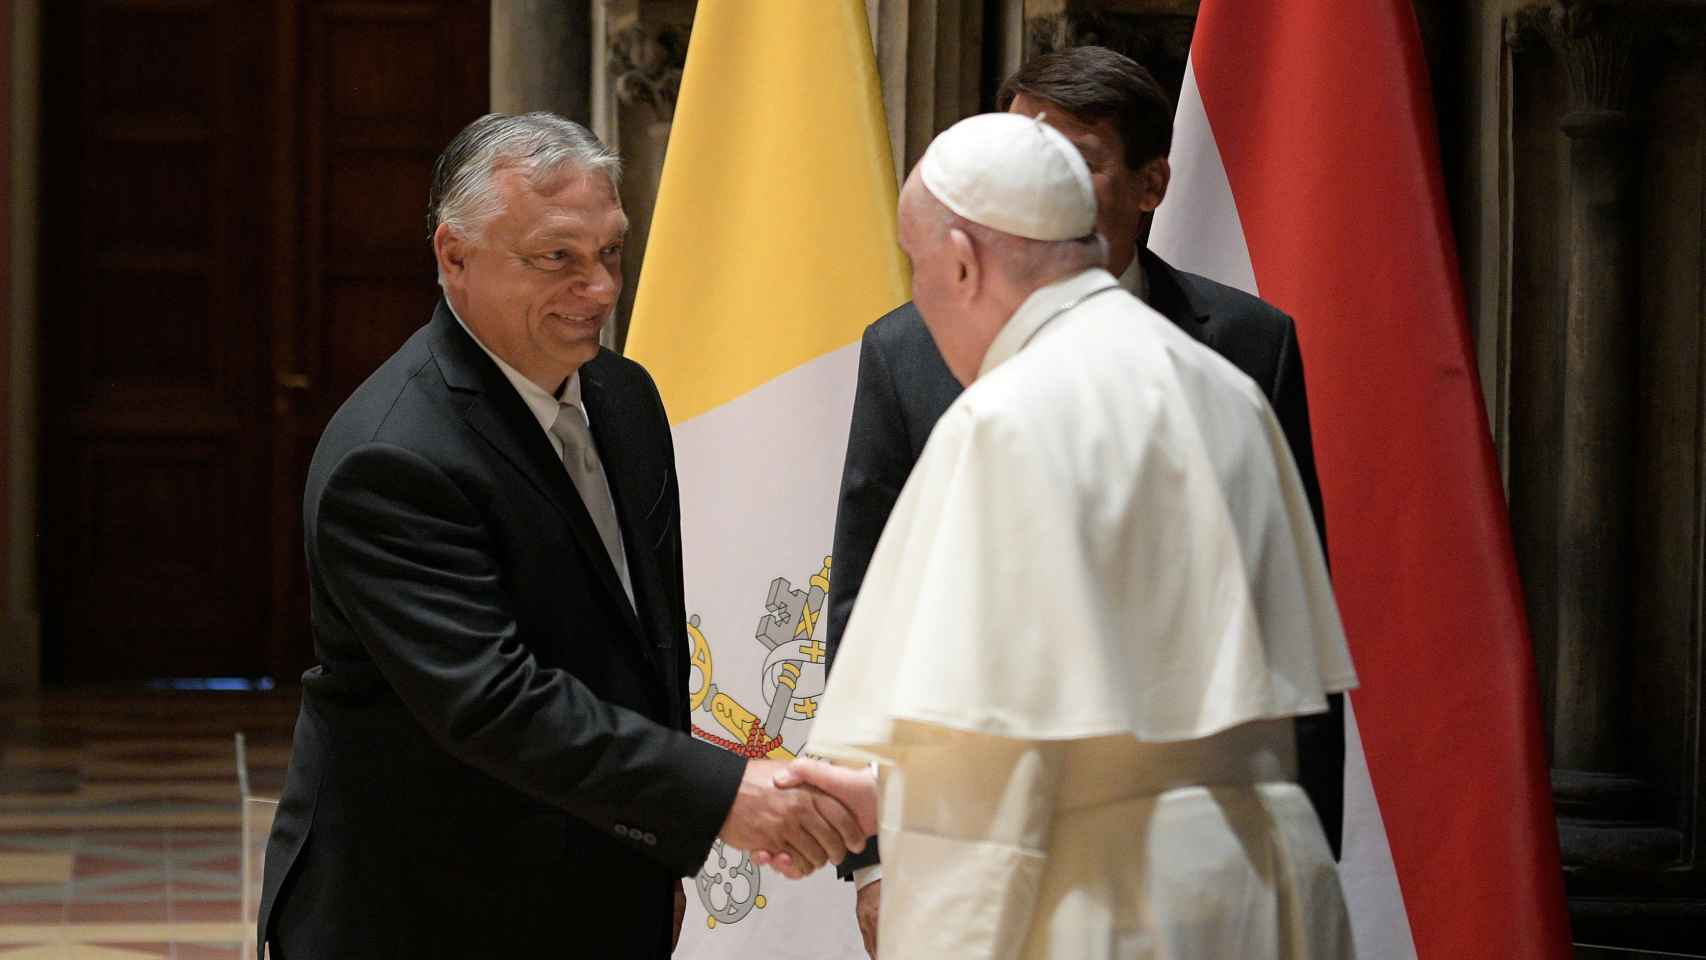 El Papa Francisco saluda a Viktor Orban, presidente de Hungría, durante su visita a Budapest.